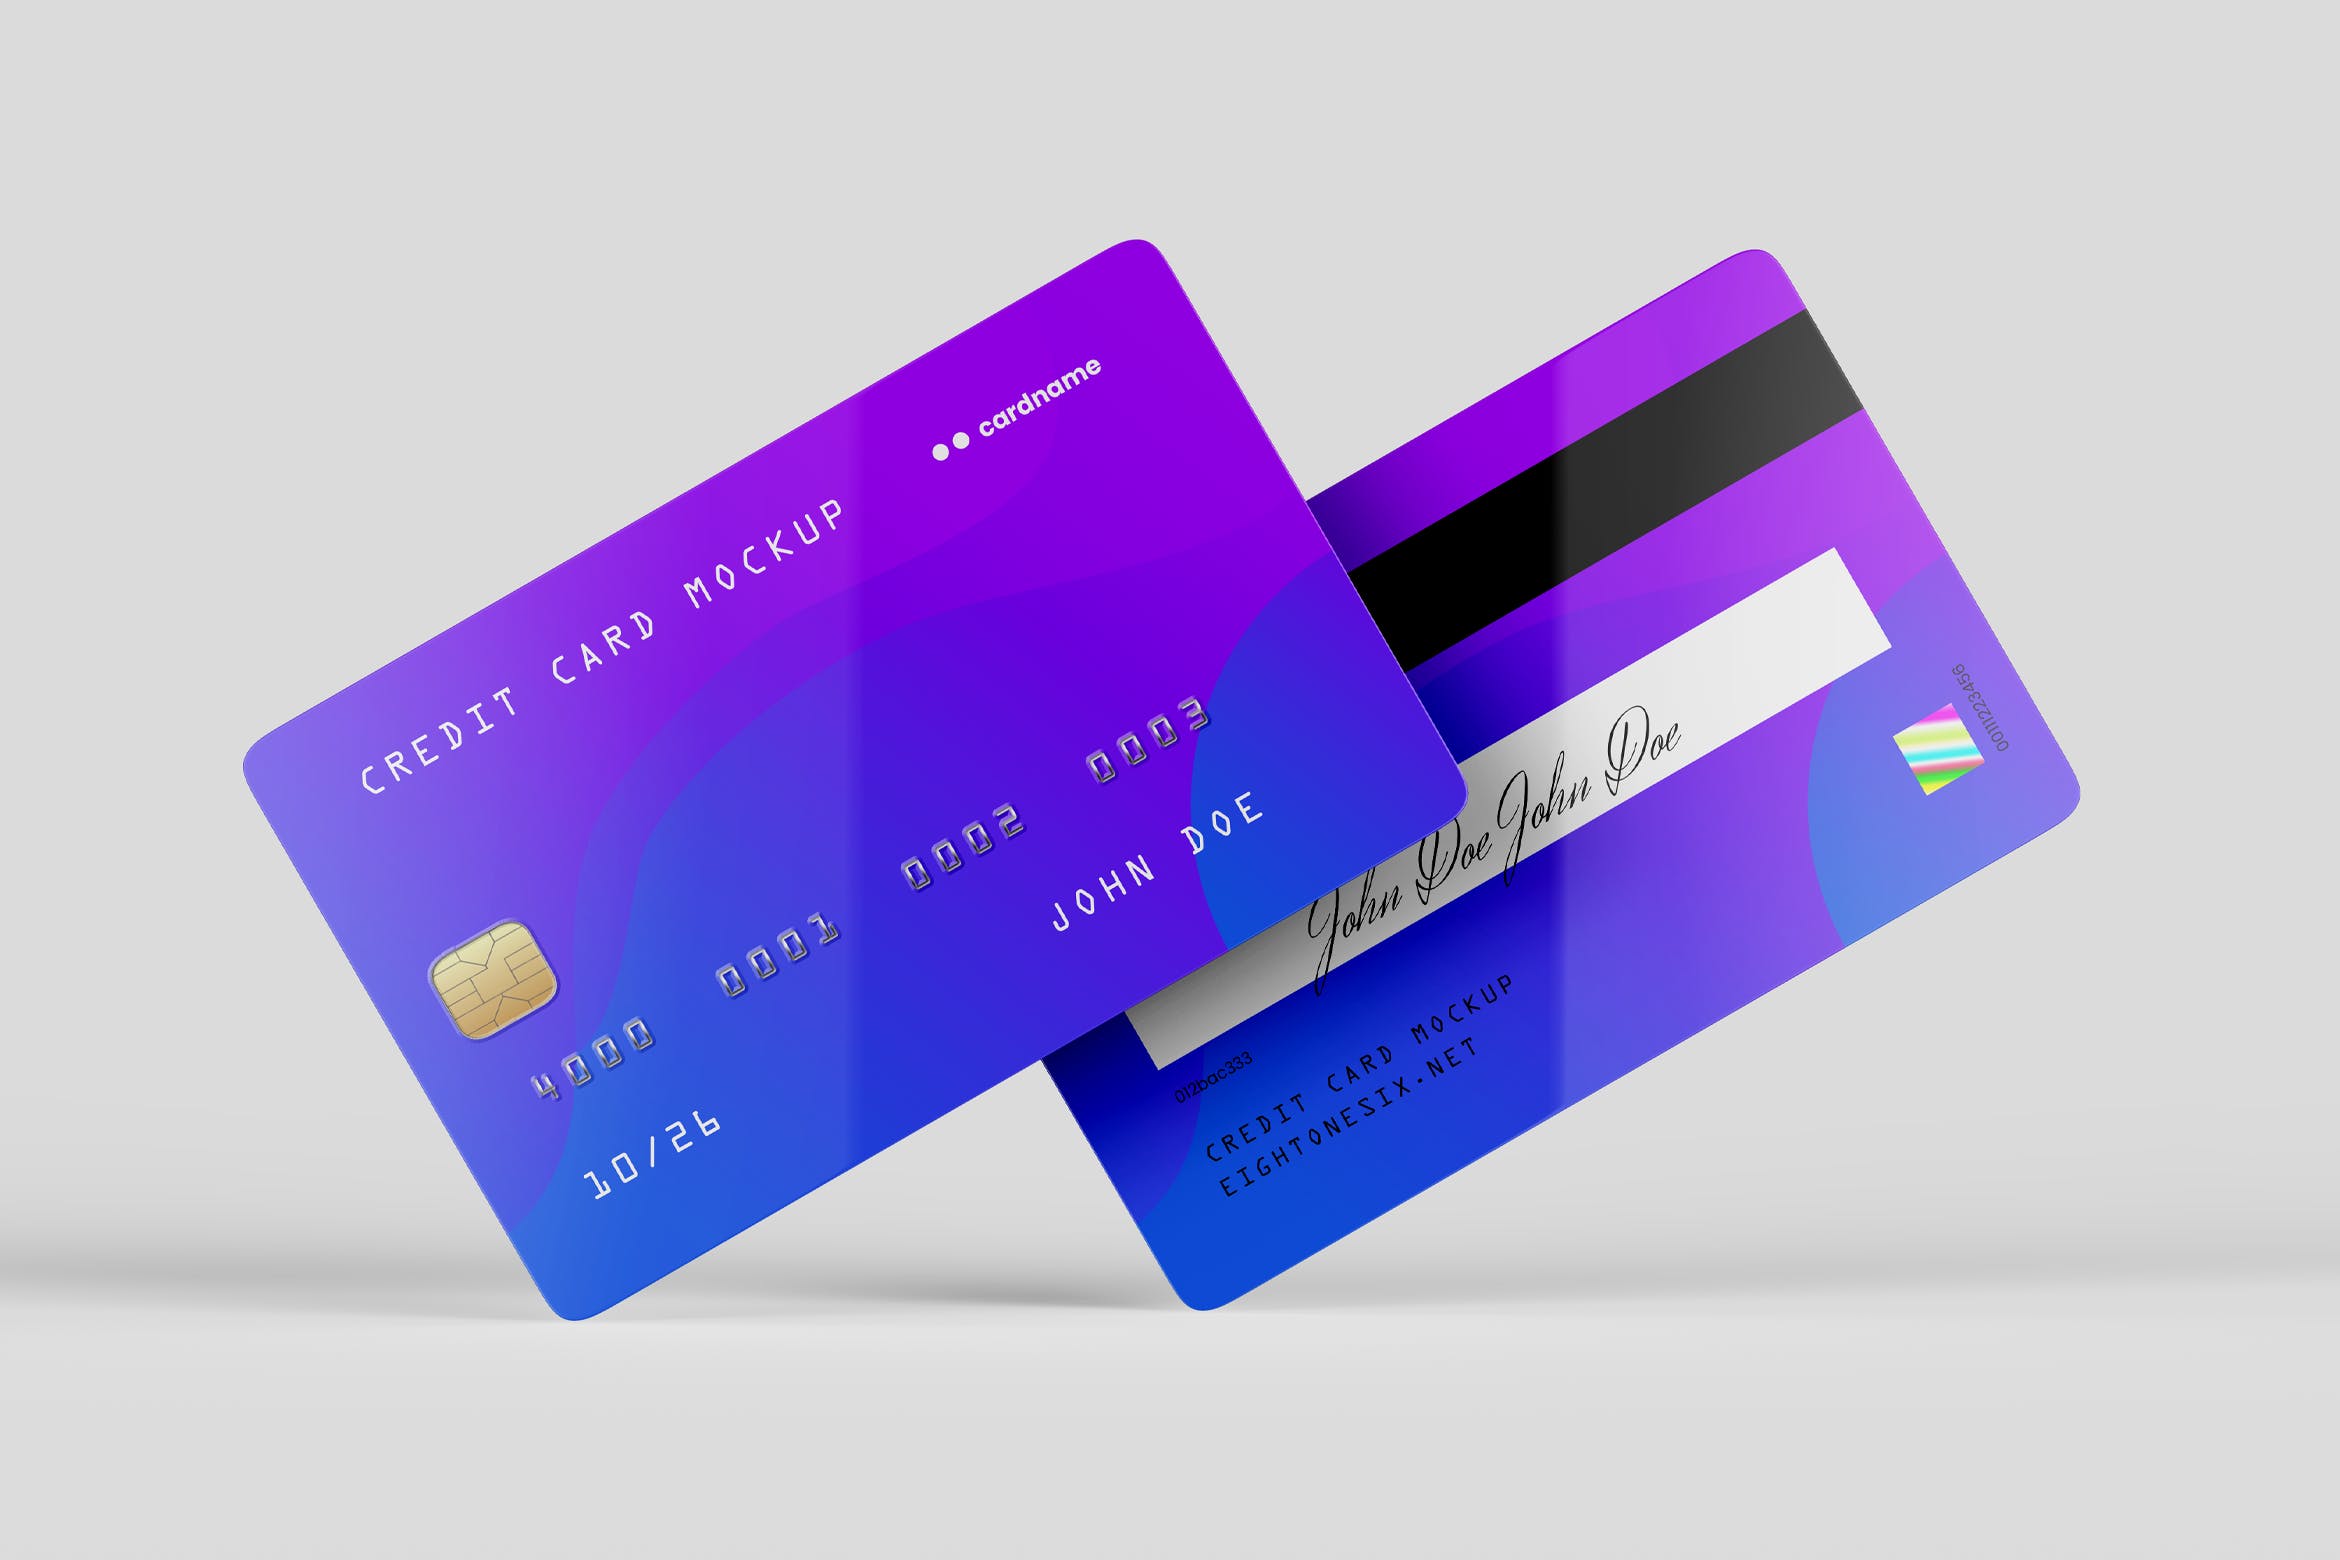 信用卡/银行卡/会员卡设计效果图样机16图库精选模板 Credit Card Mock-Up Template插图